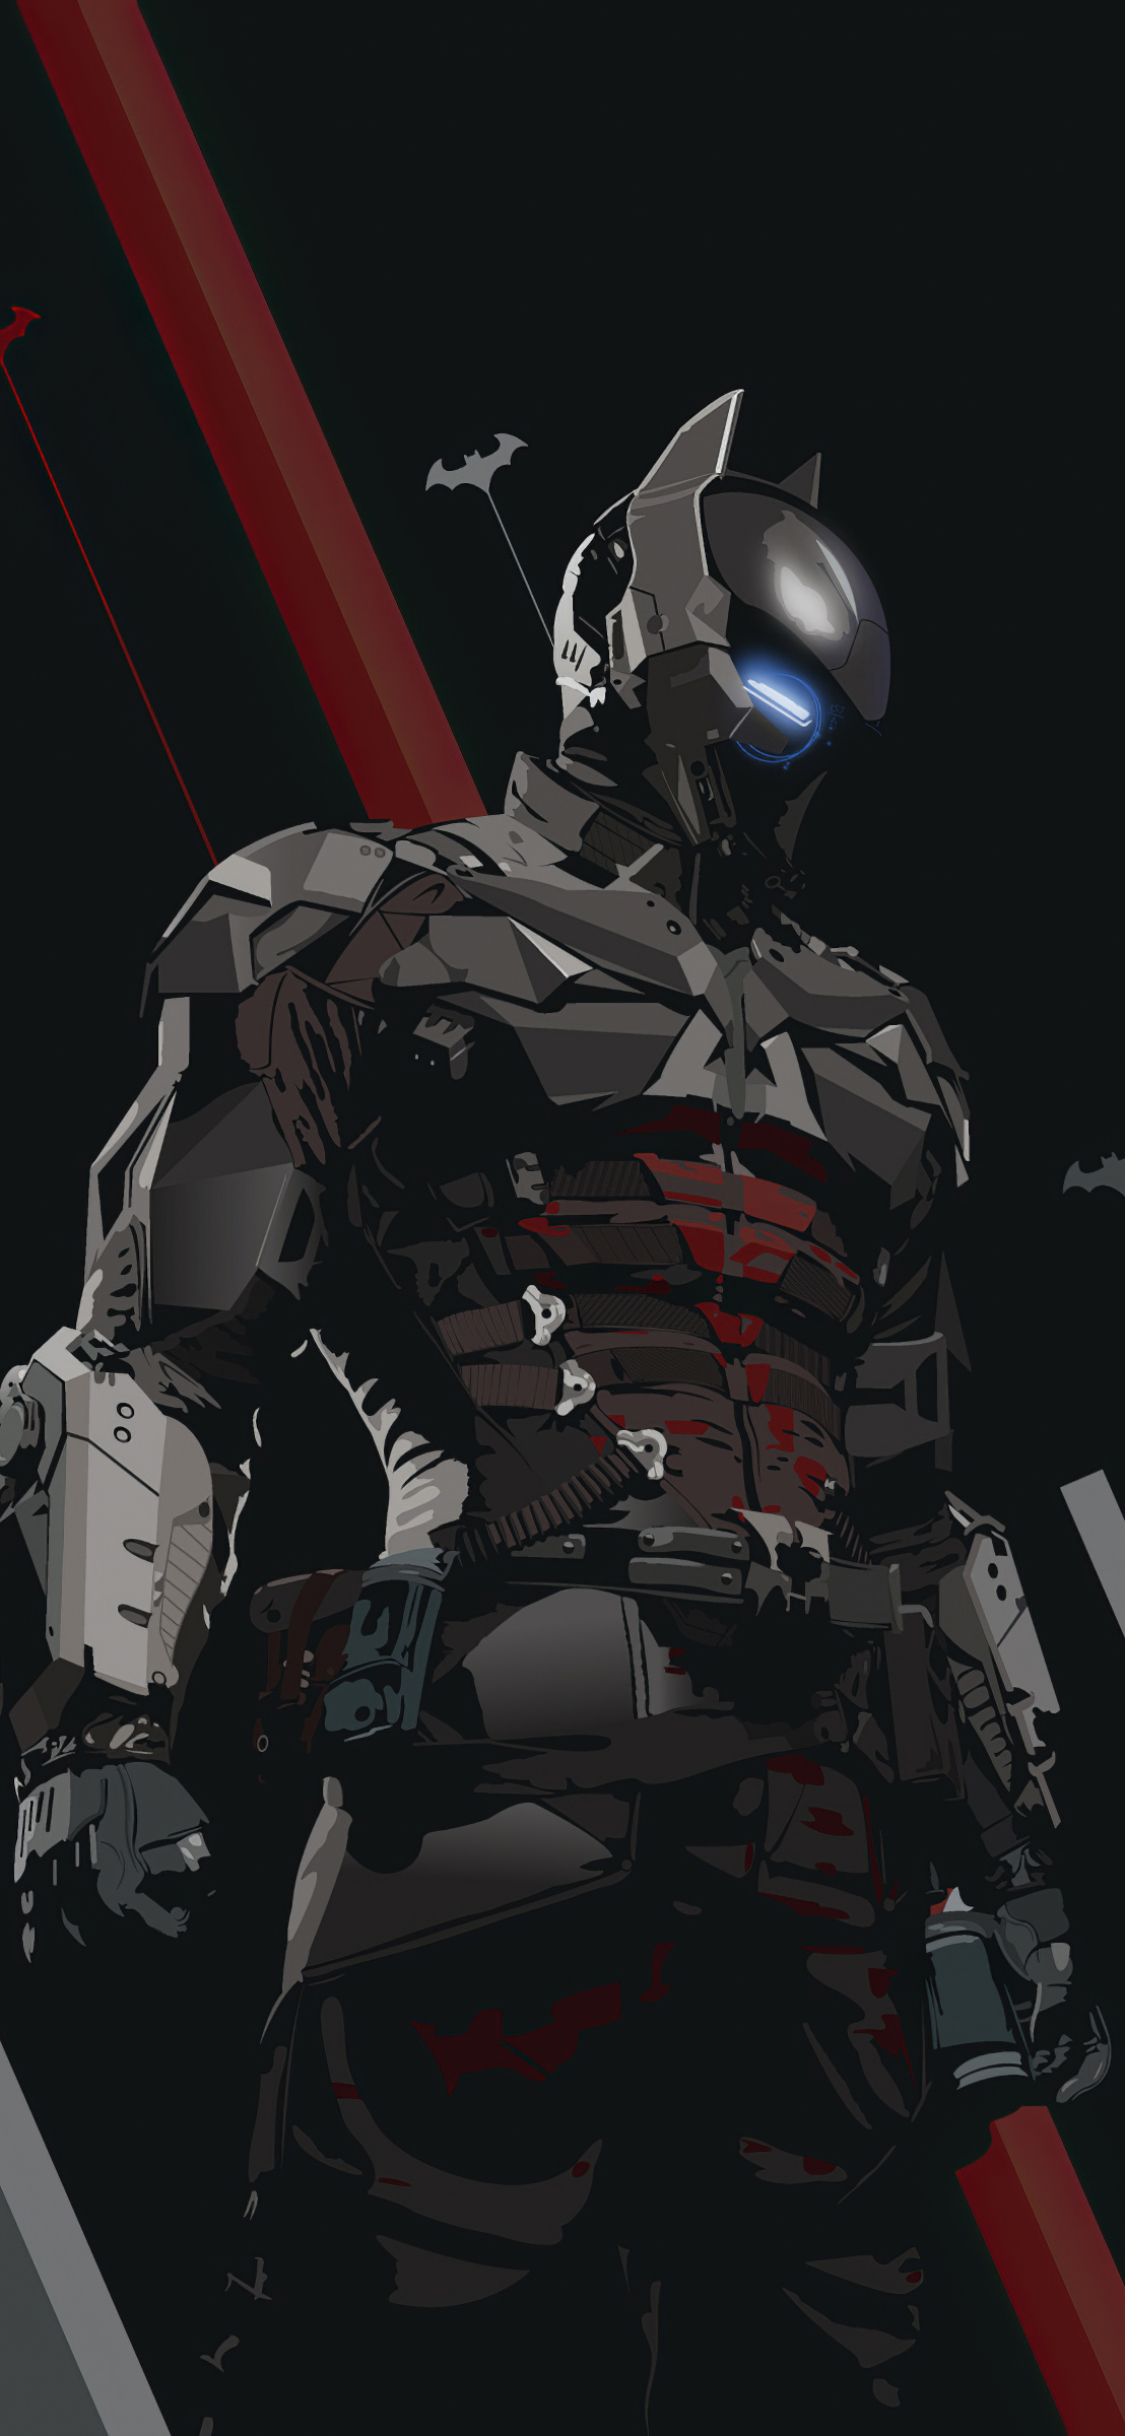 arkham knight (dc comics), batman, comics, dc comics